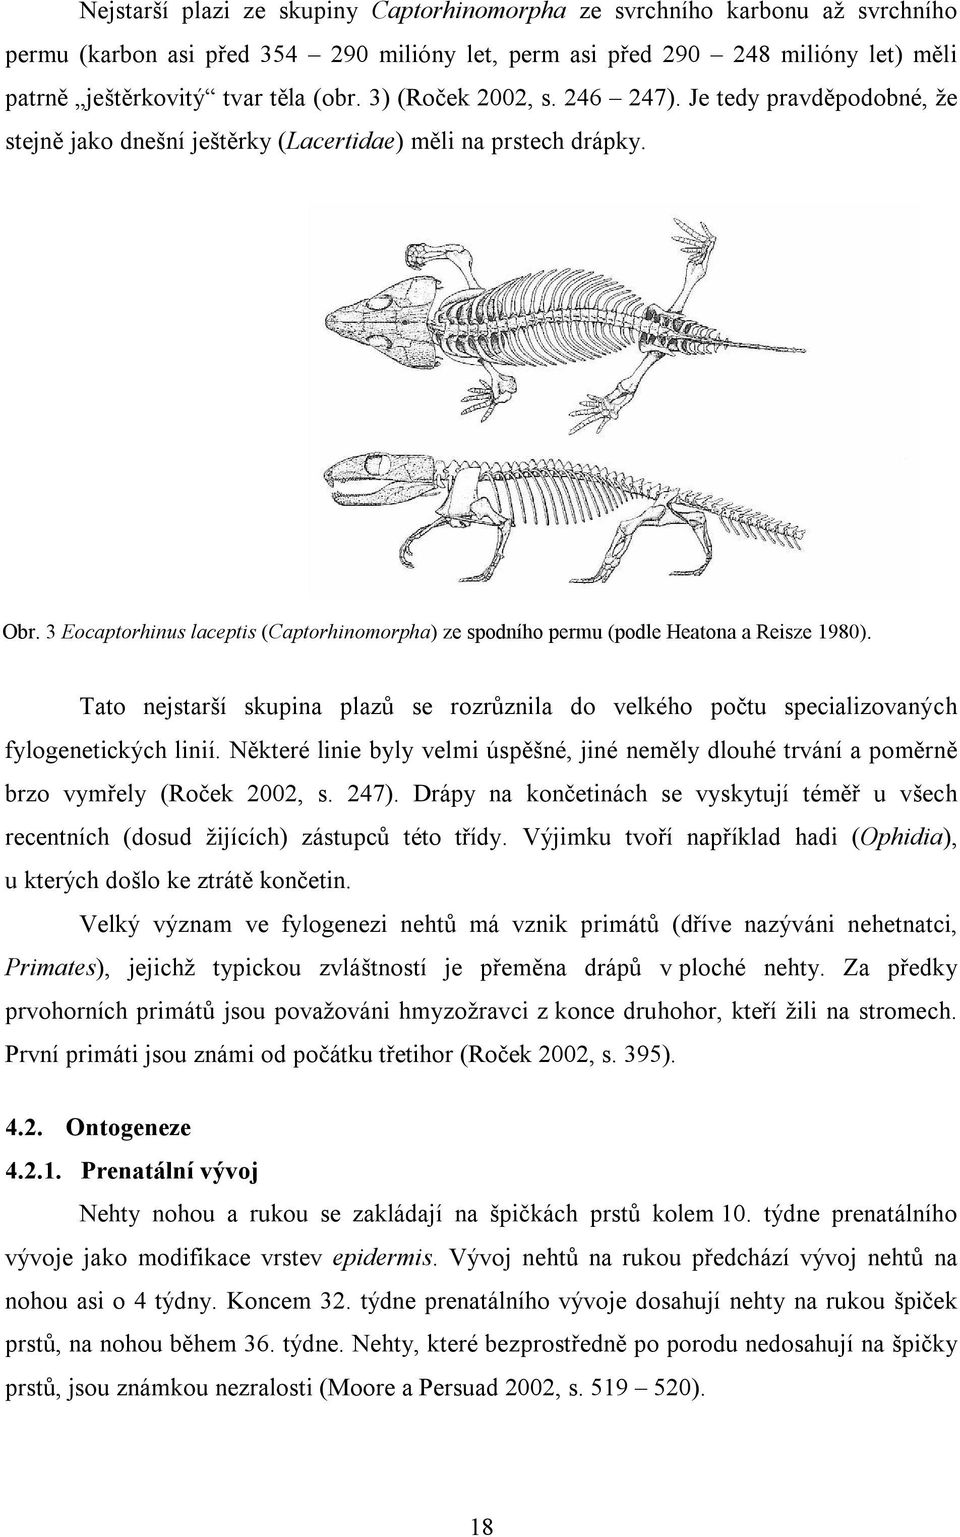 3 Eocaptorhinus laceptis (Captorhinomorpha) ze spodního permu (podle Heatona a Reisze 1980). Tato nejstarší skupina plazů se rozrůznila do velkého počtu specializovaných fylogenetických linií.